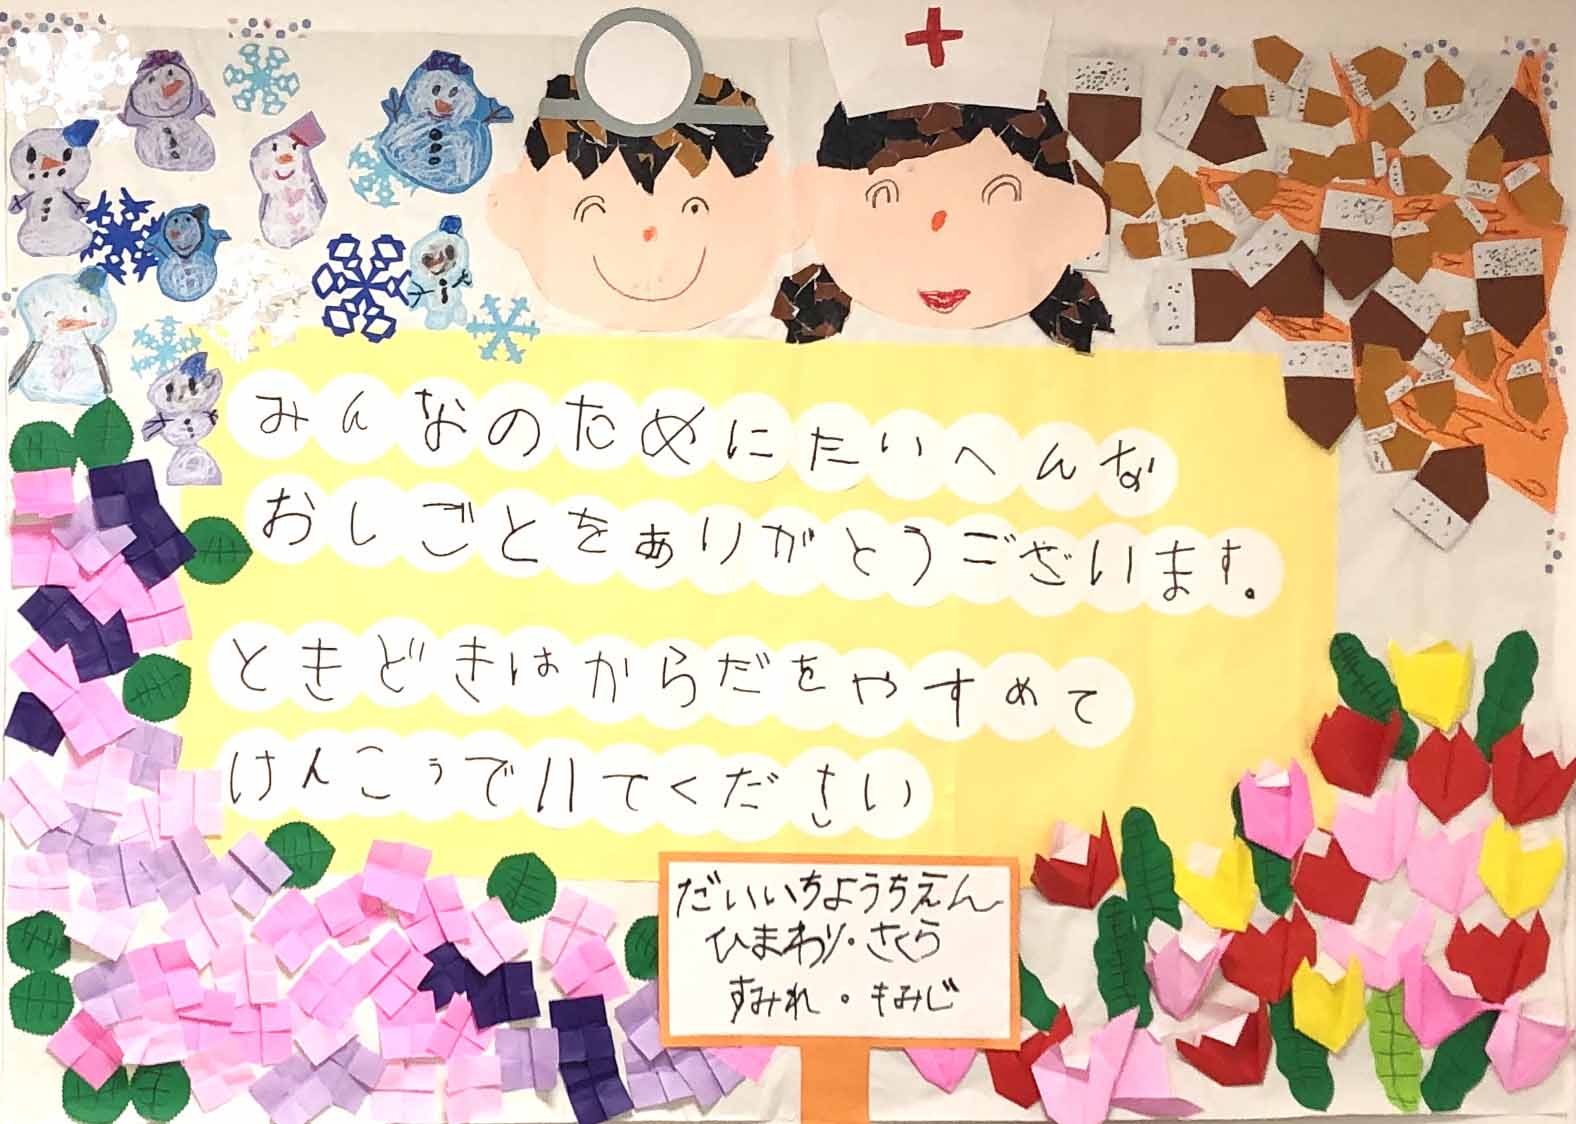 愛知文教女子短期大学附属第一幼稚園の園児からの応援メッセージ